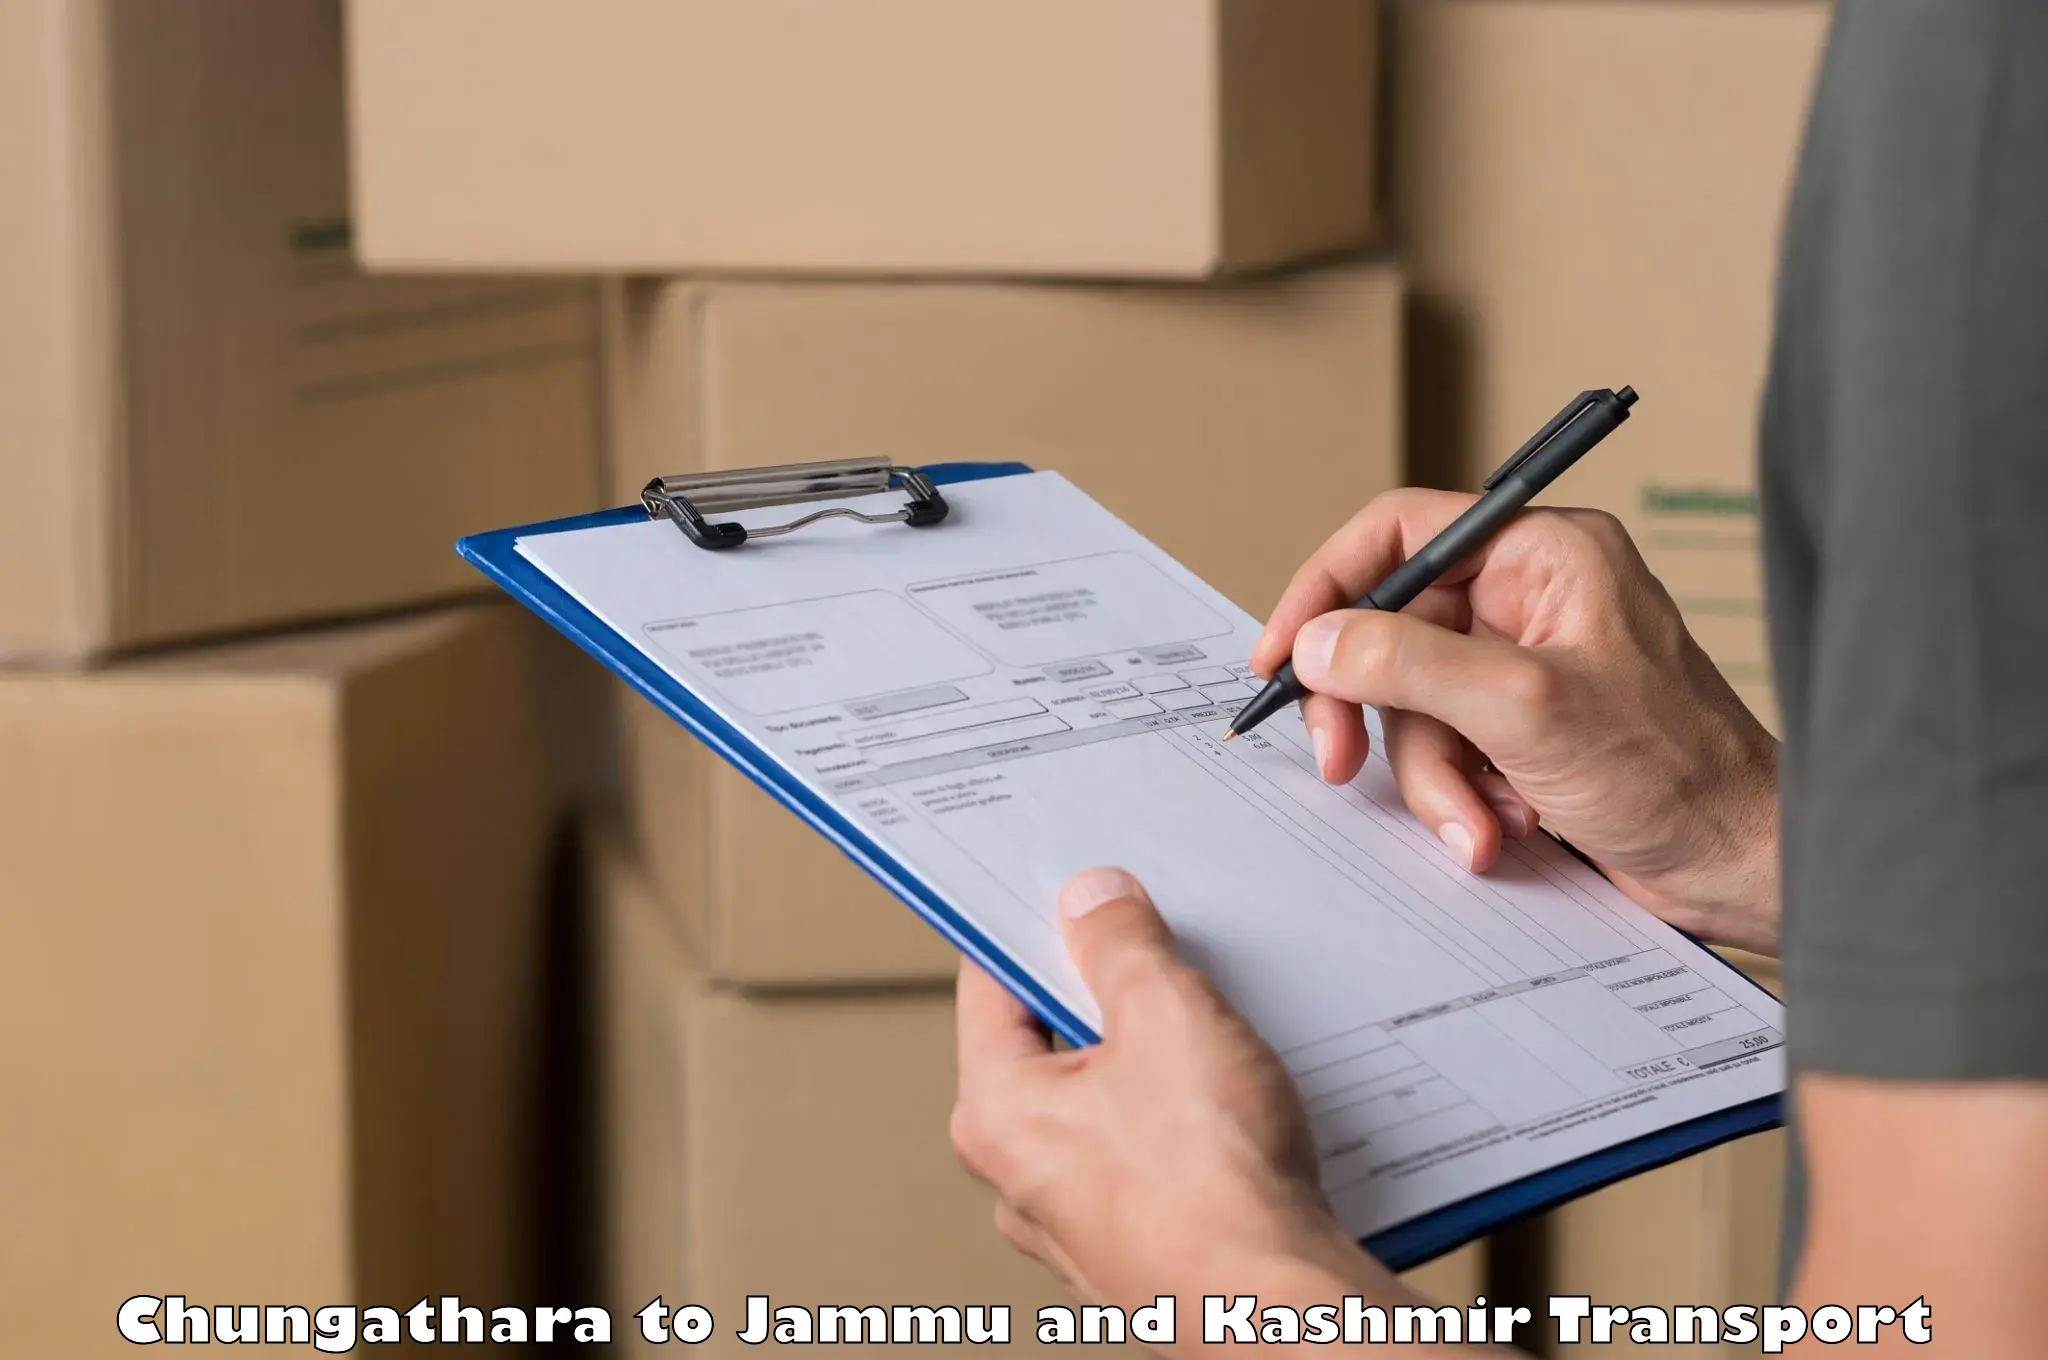 Shipping partner Chungathara to Ramban